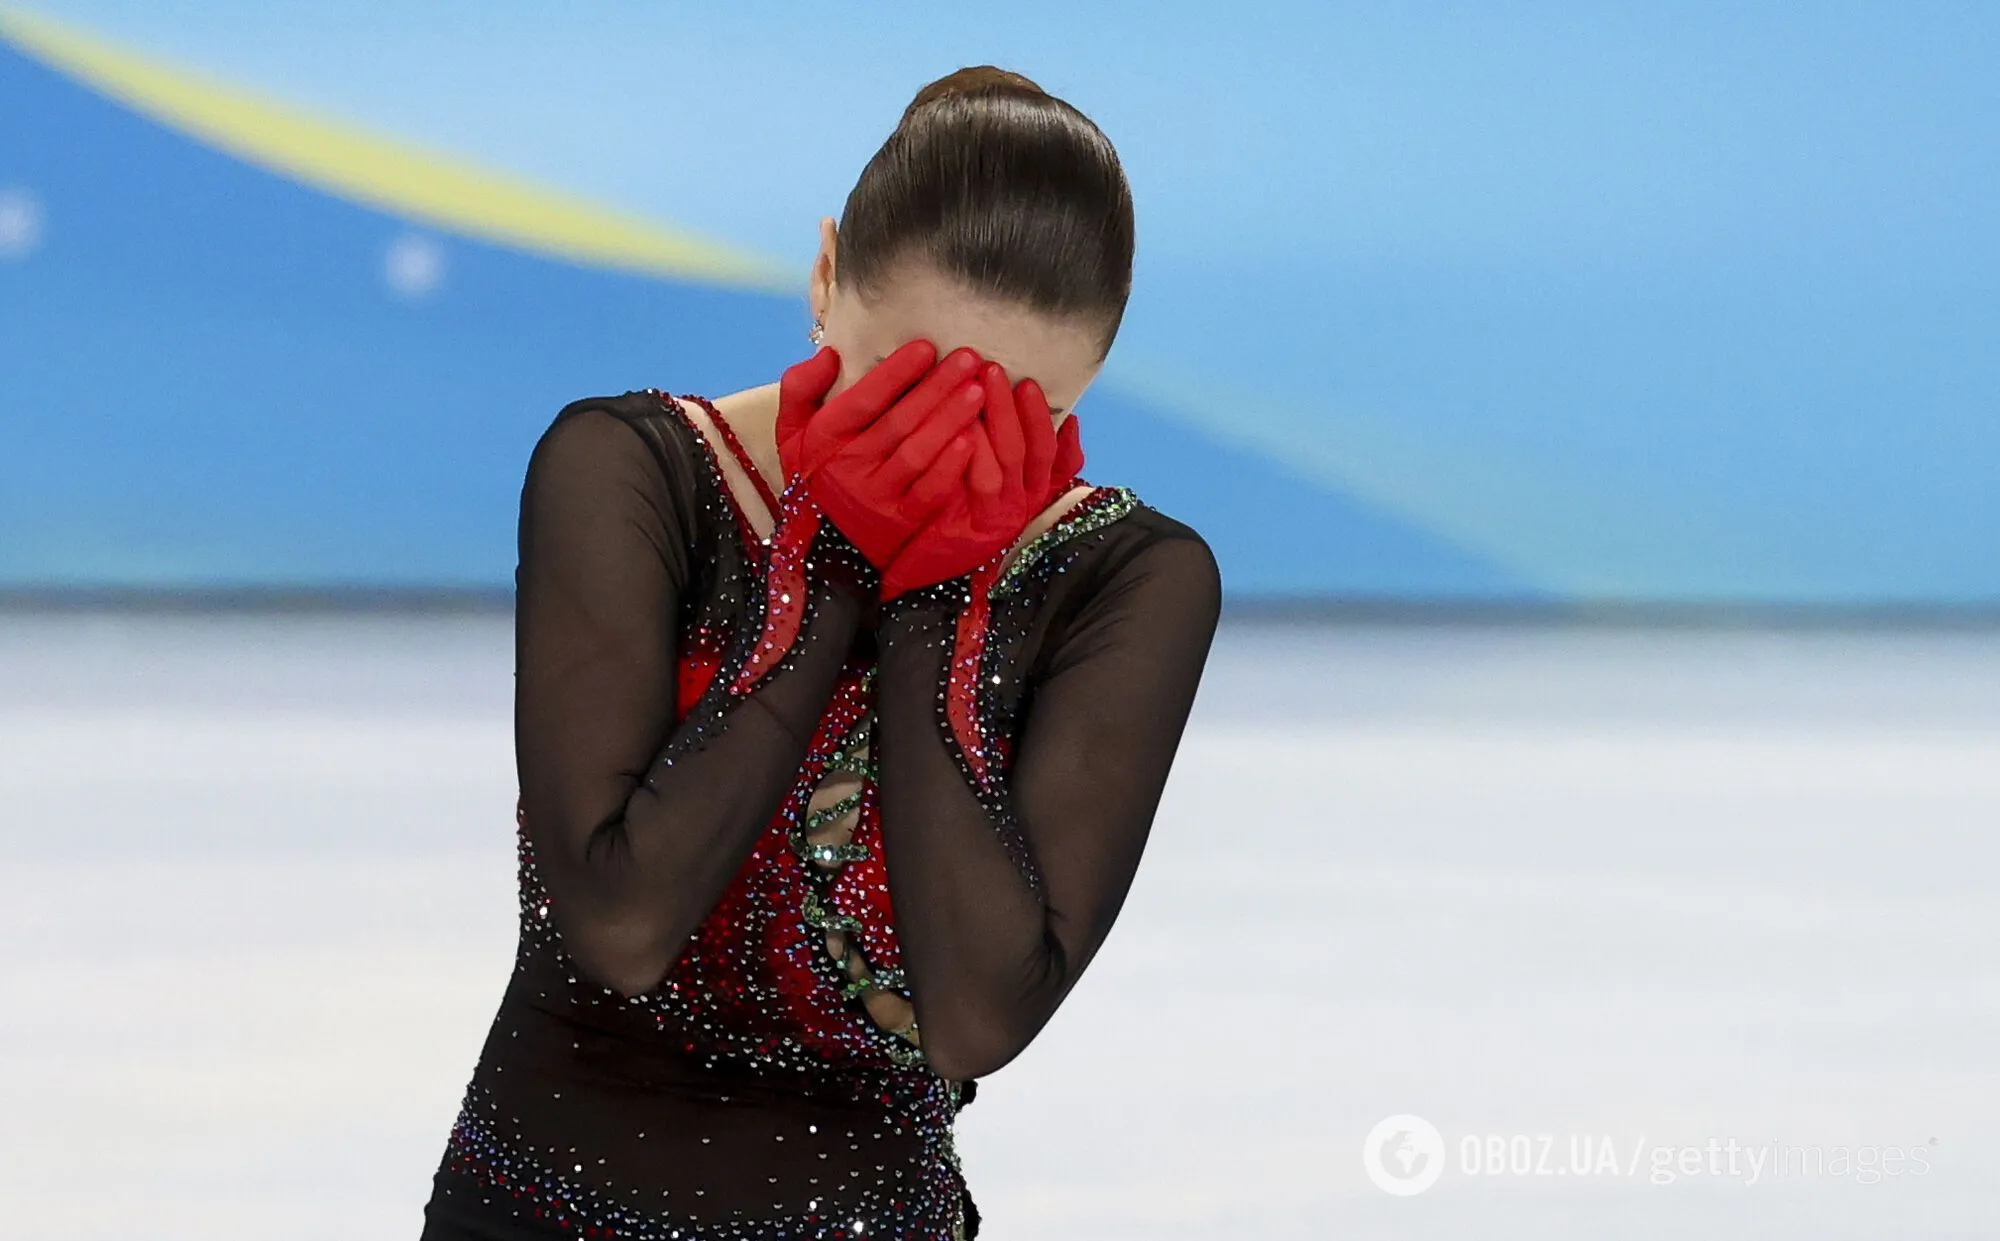 Каміла Валієва невдало виступила у довільній програмі.